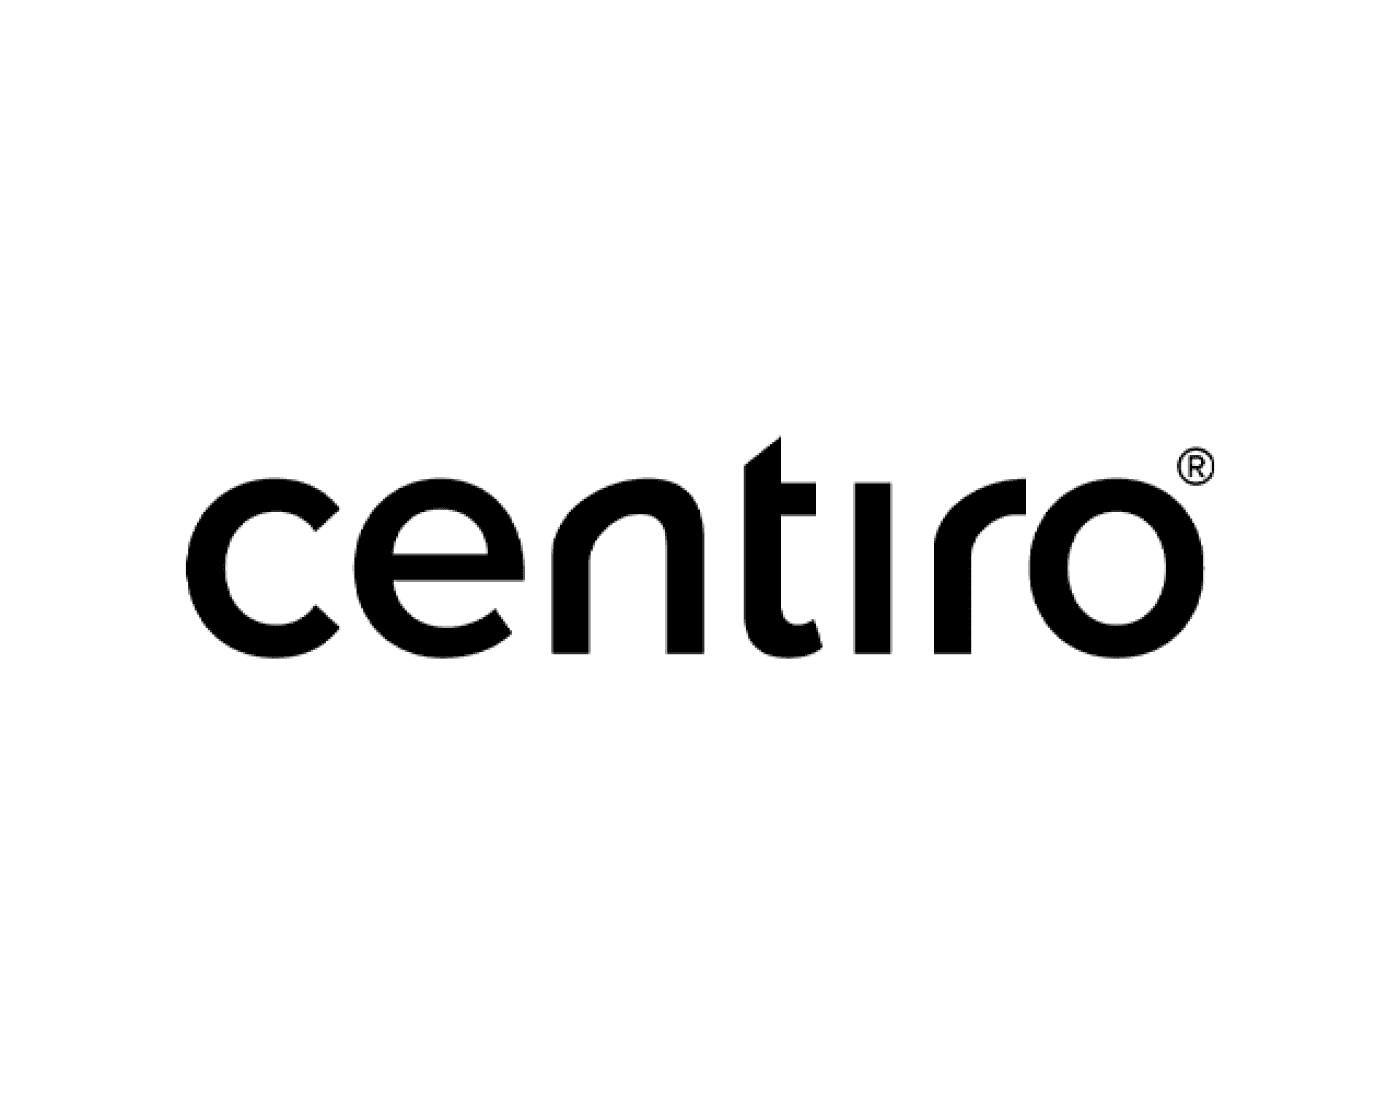 centiro-640x500-02.png